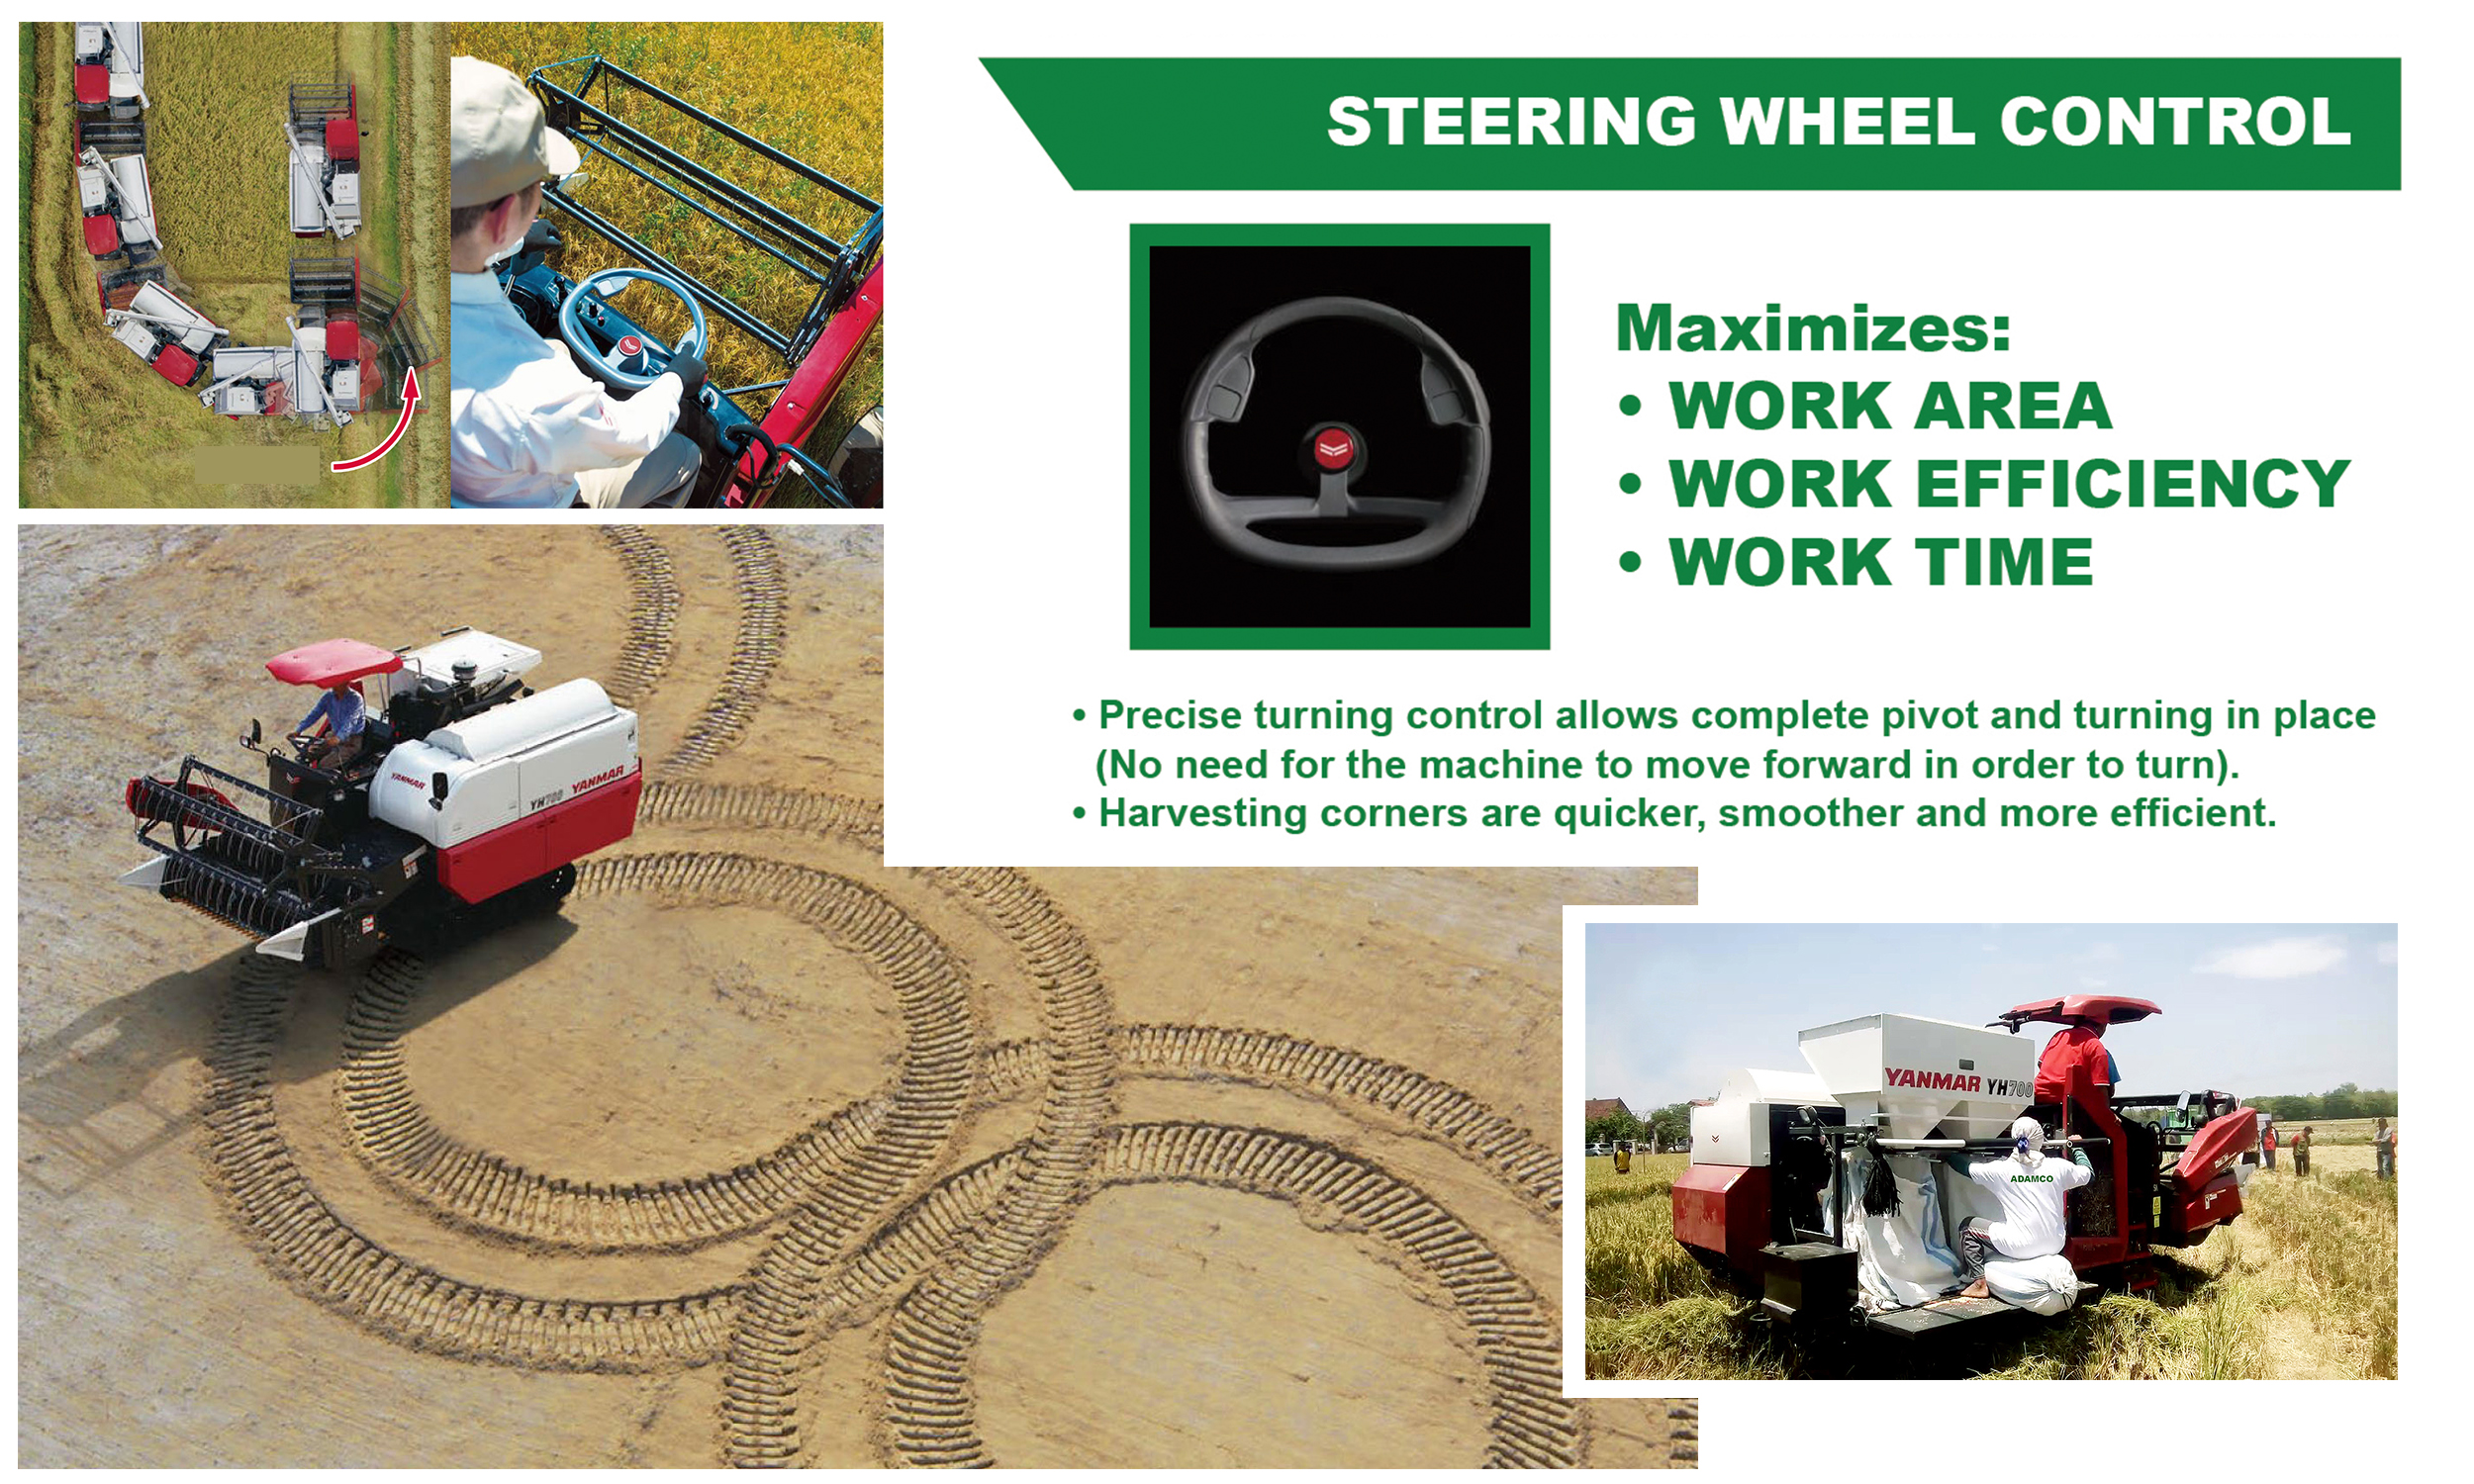 steering_wheel